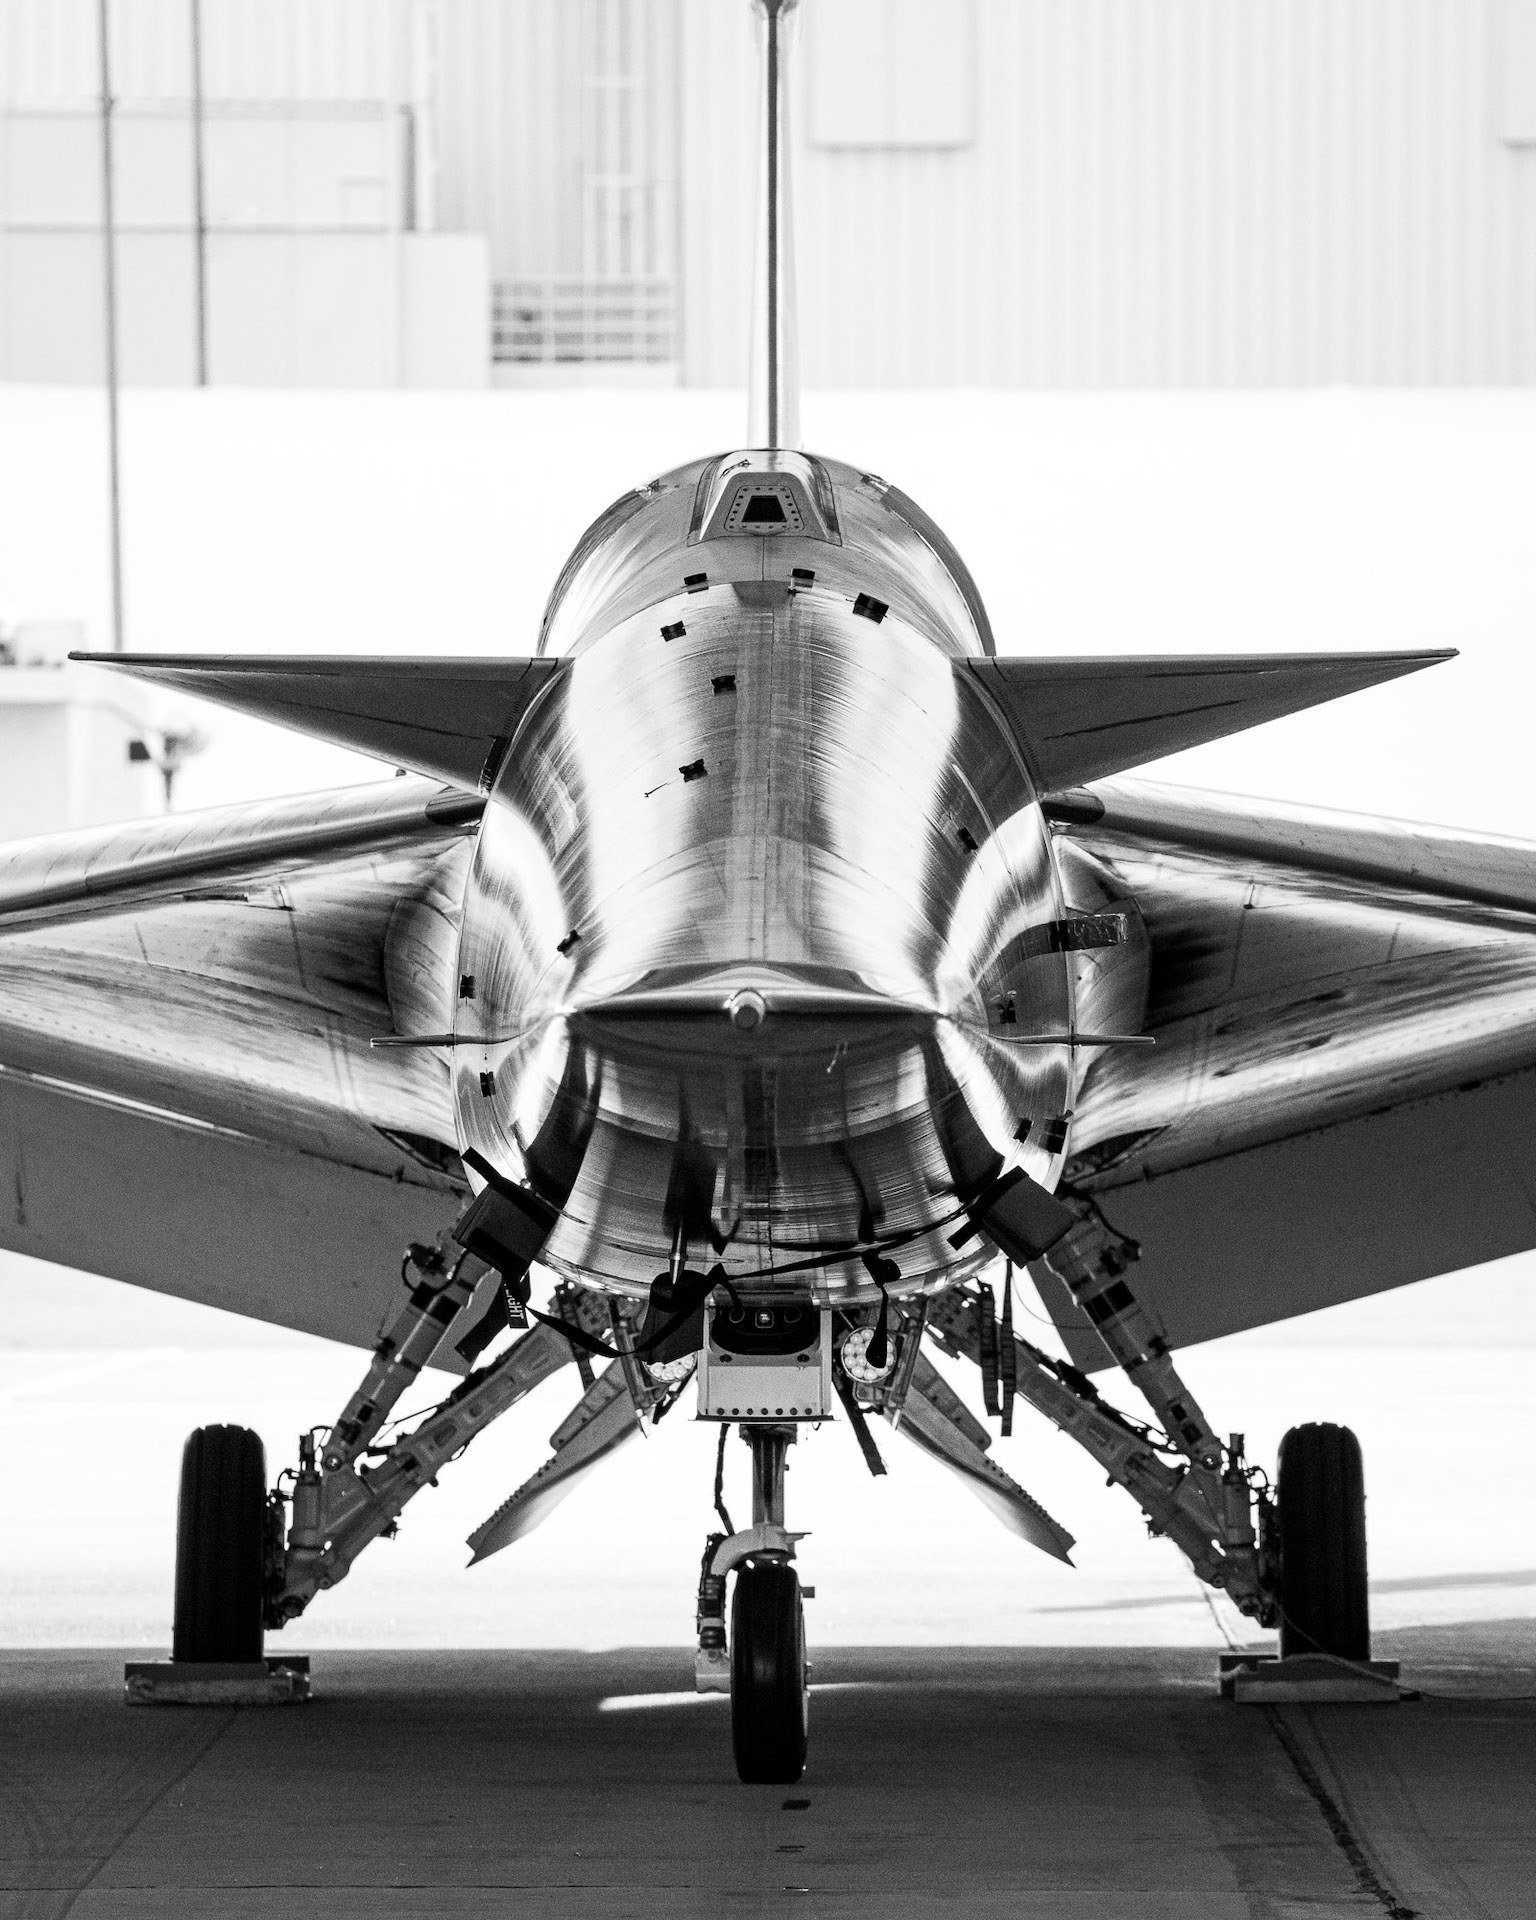 X-59 süpersonik jetin kafa kafaya siyah beyaz görüntüsü. Jet, üç tekerlekli iniş takımları üzerinde oturuyor ve jetin gövdesi ile kanatlarının keskin, şık açıları, aracın kıvrımlarını ve ayrıntılarını vurgulayarak düzgün bir ışık olarak yansıyor.